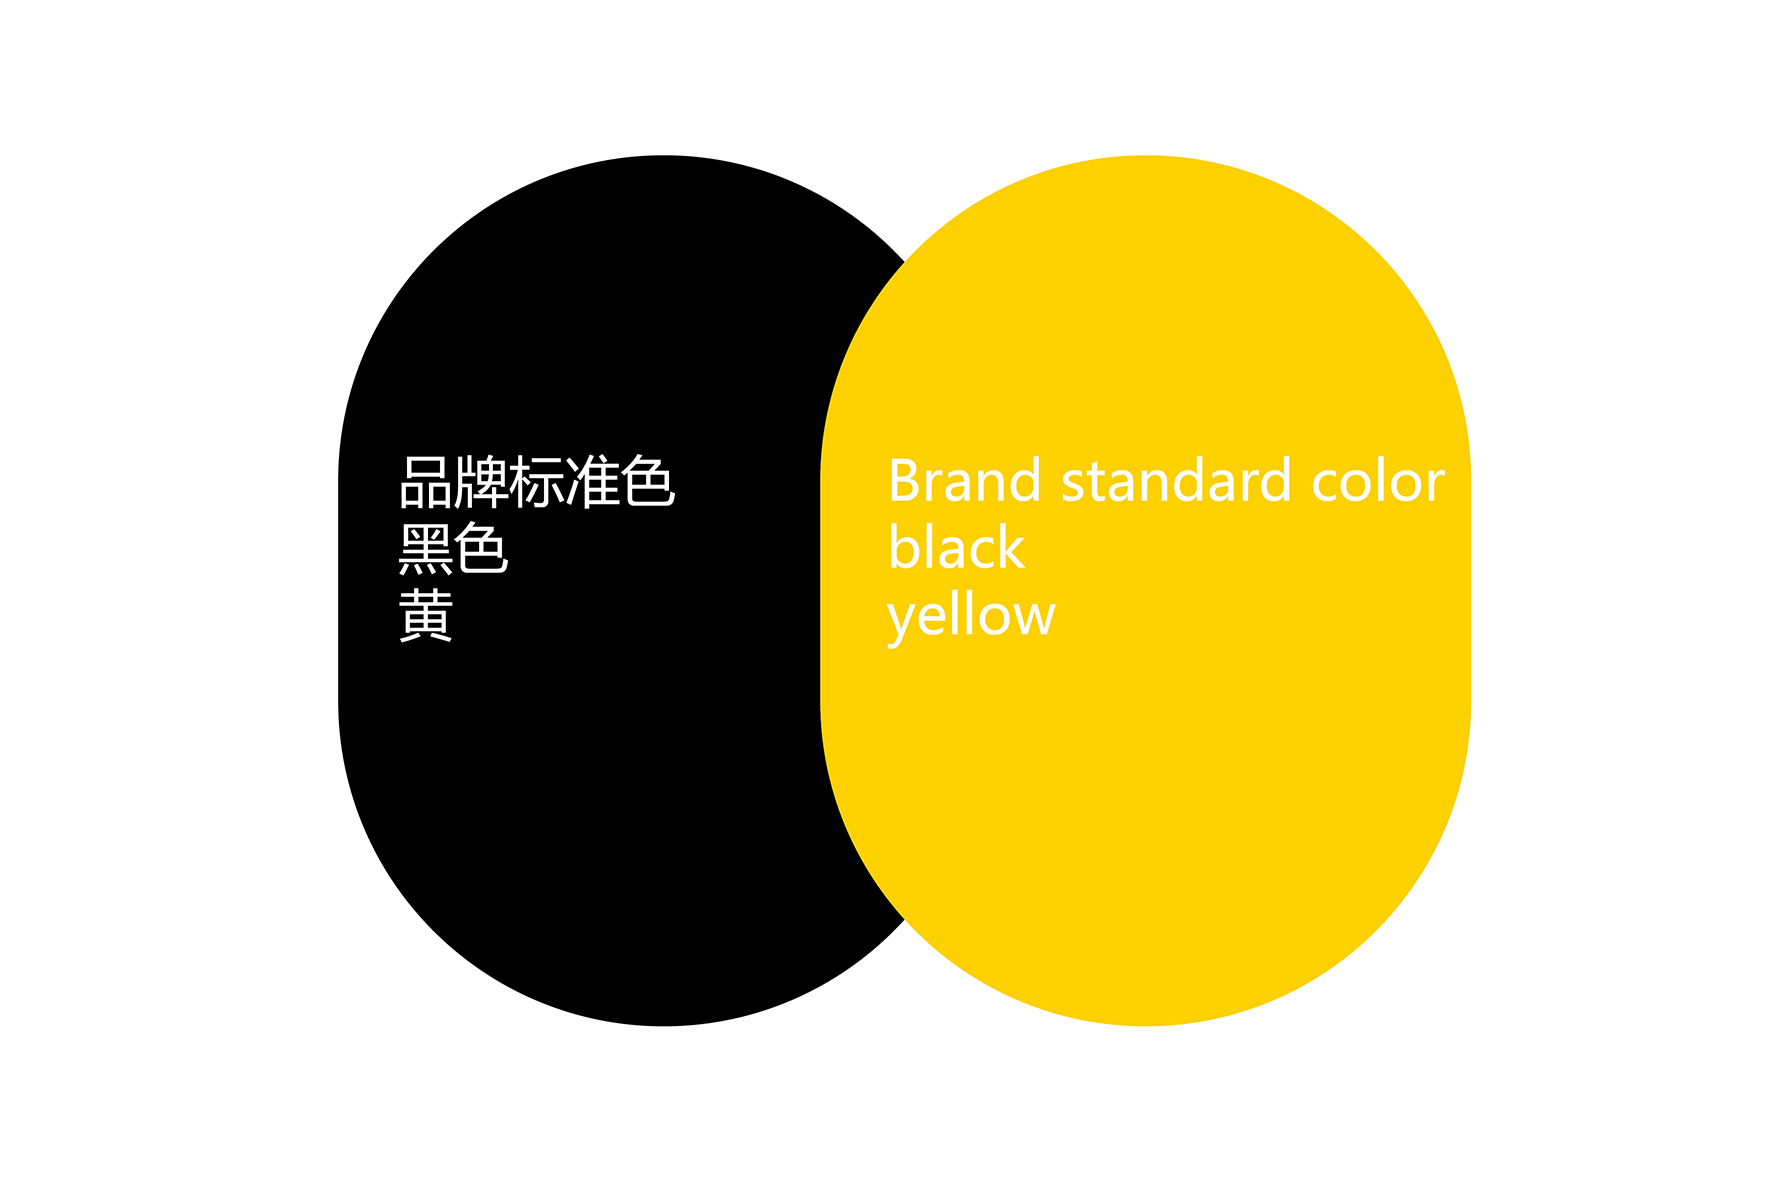 重庆火锅品牌logo/vi设计